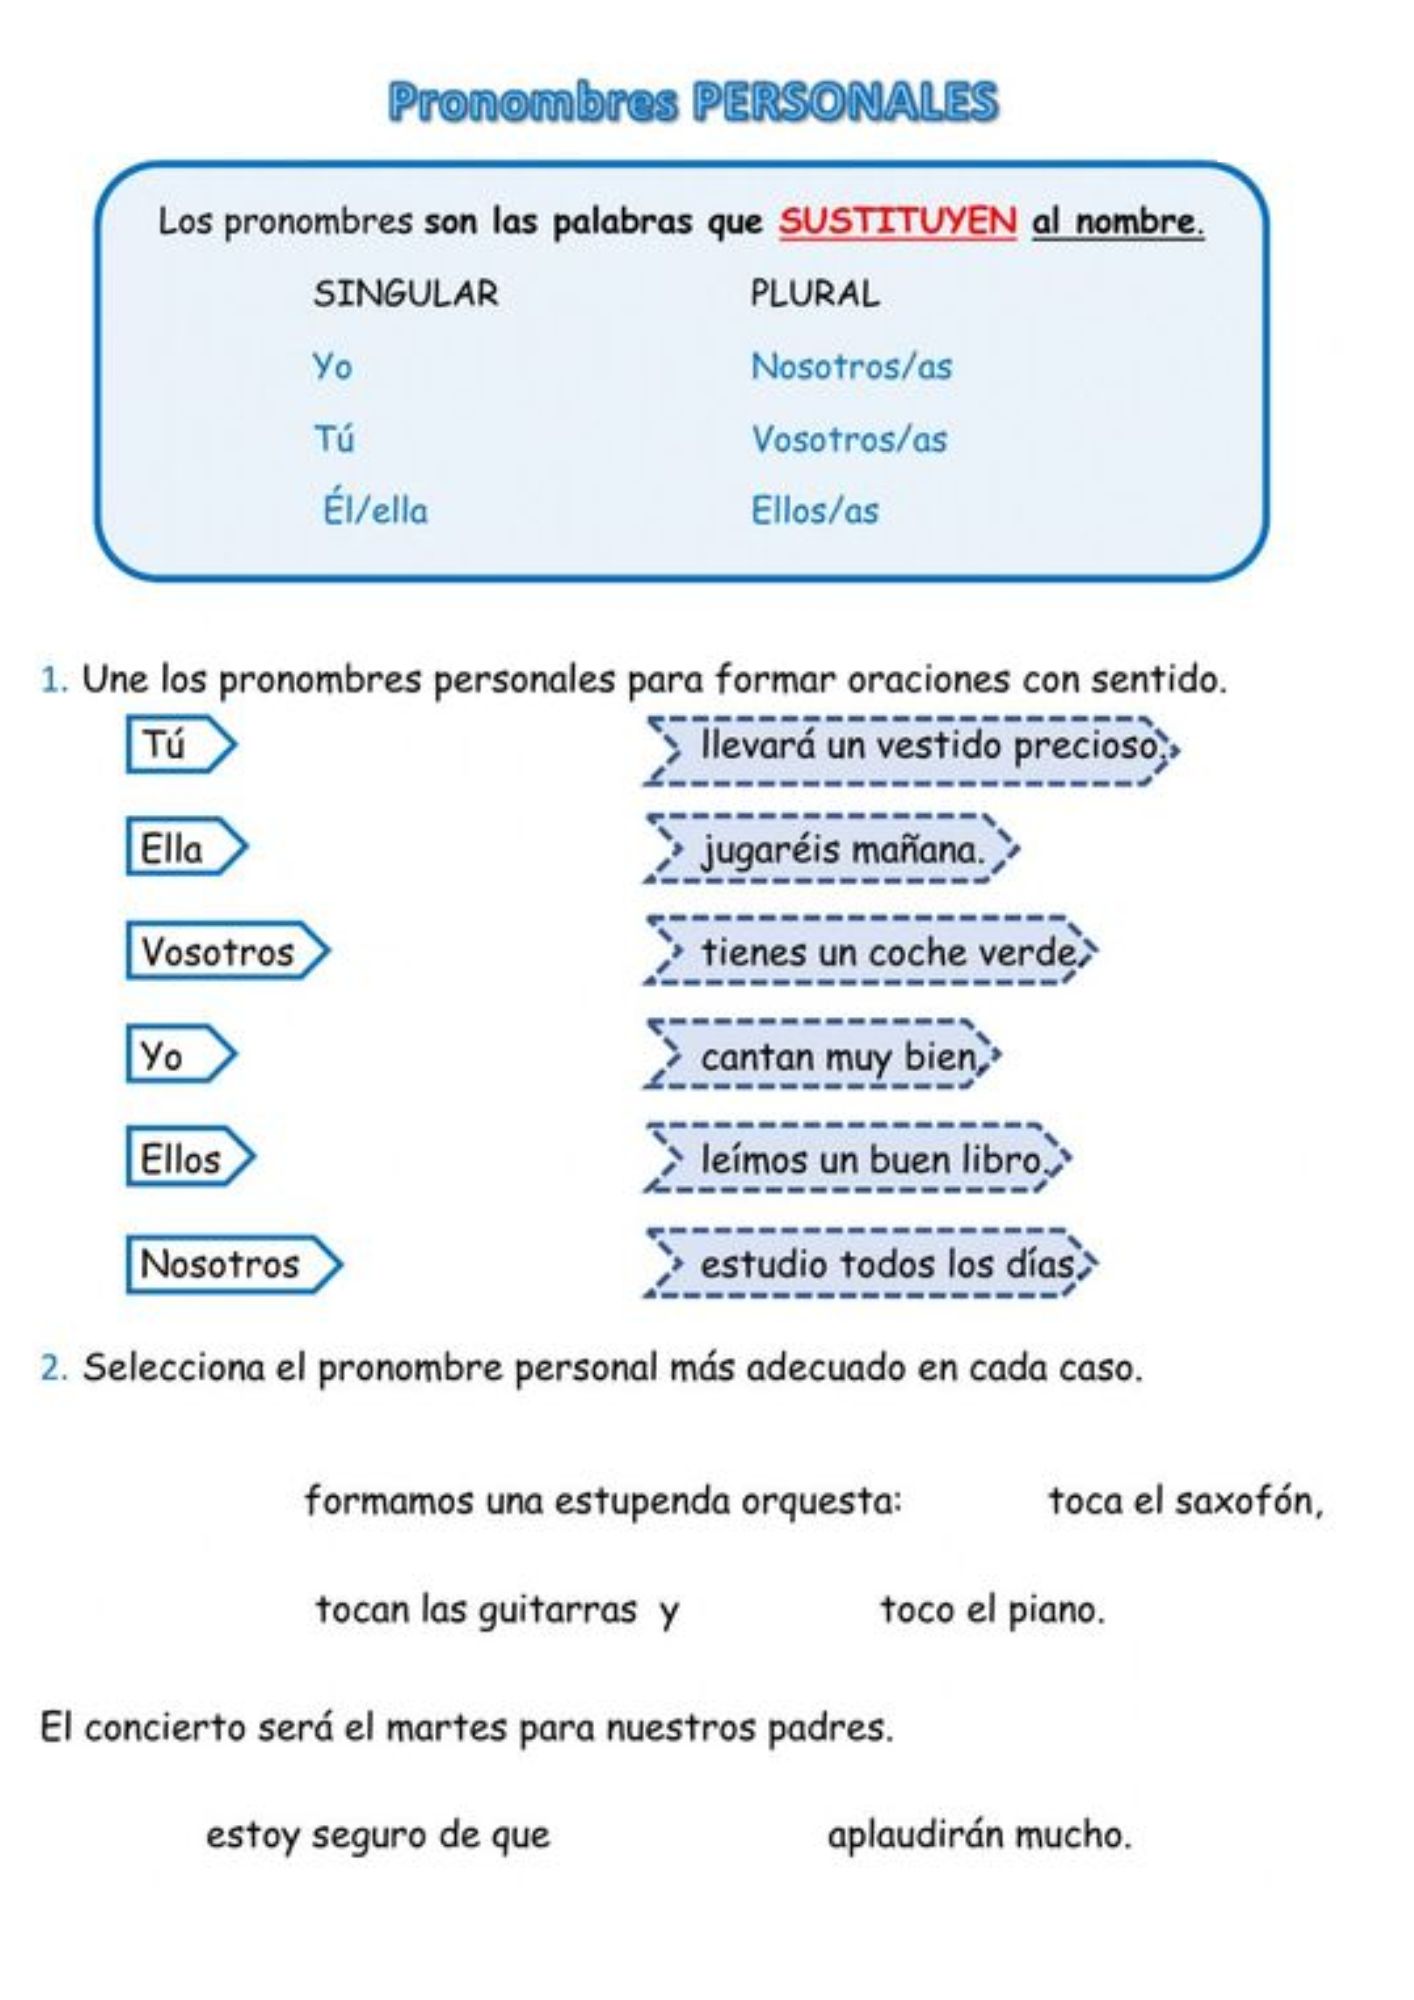 Fichas de pronombres personales: Aprendizaje interactivo en español